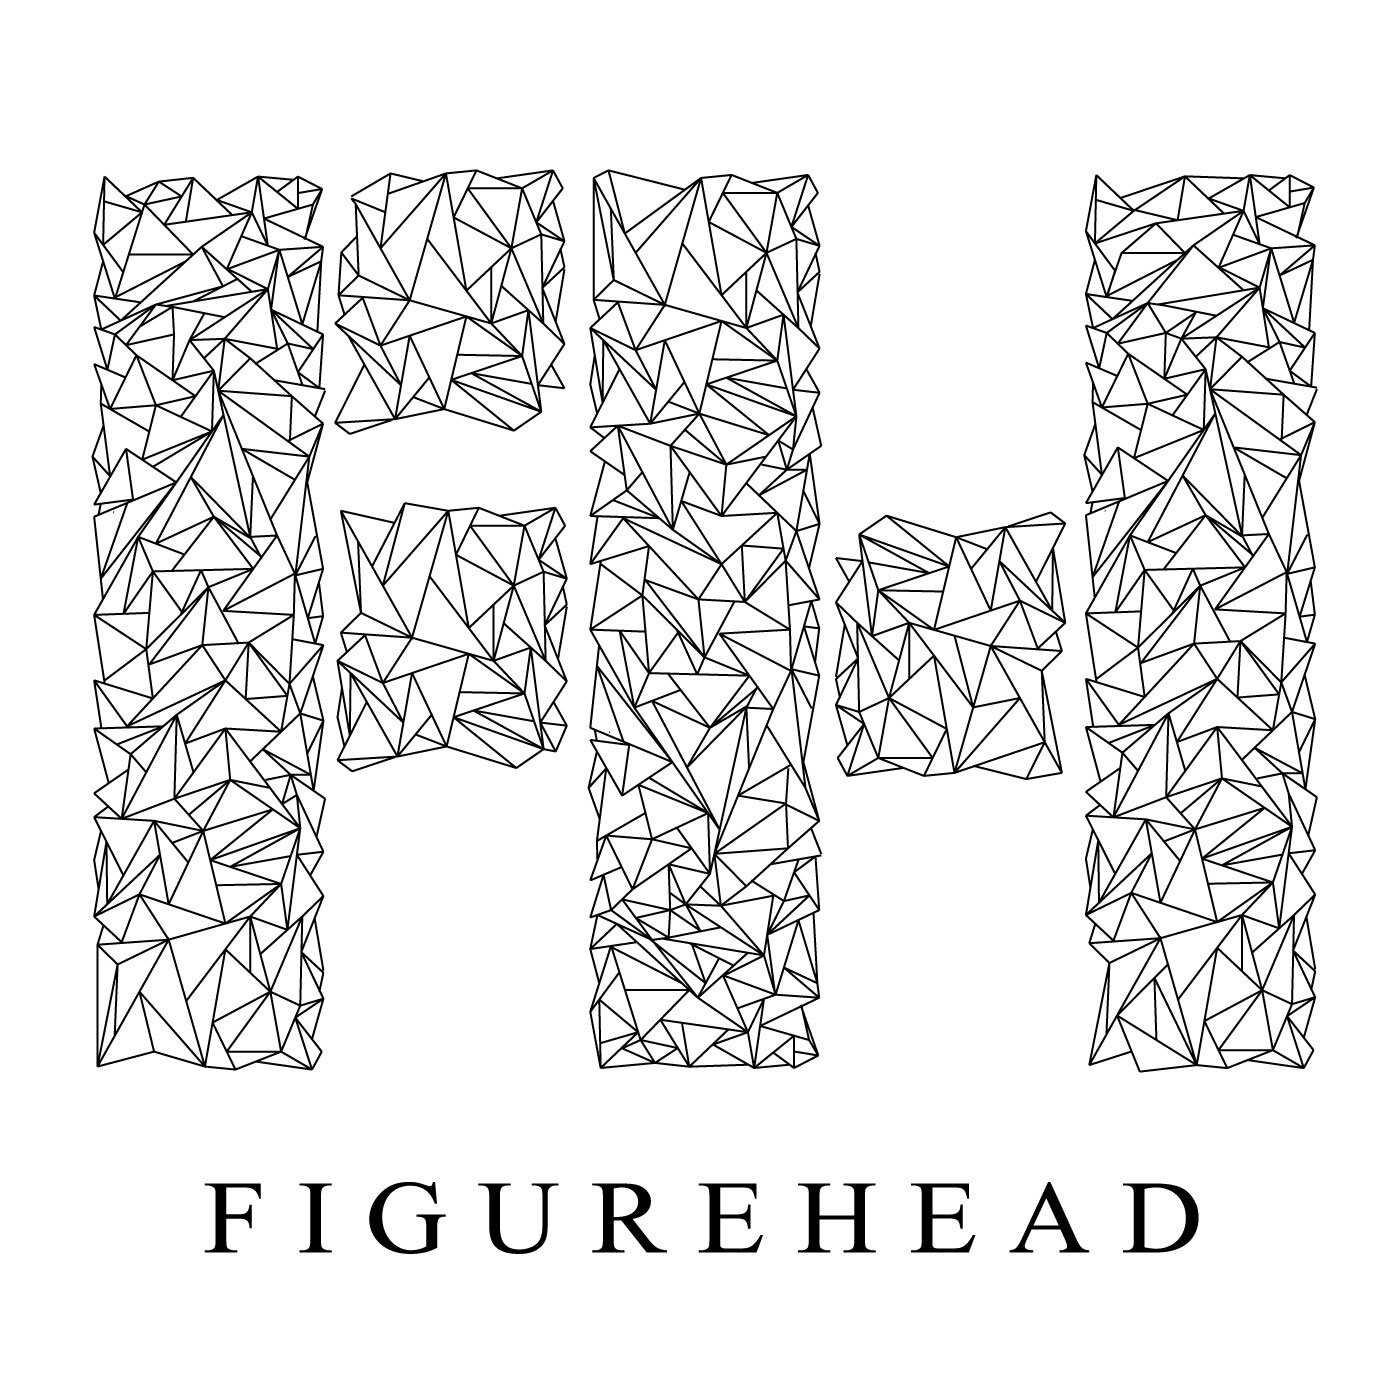 Figurehead Releases Wordy Single